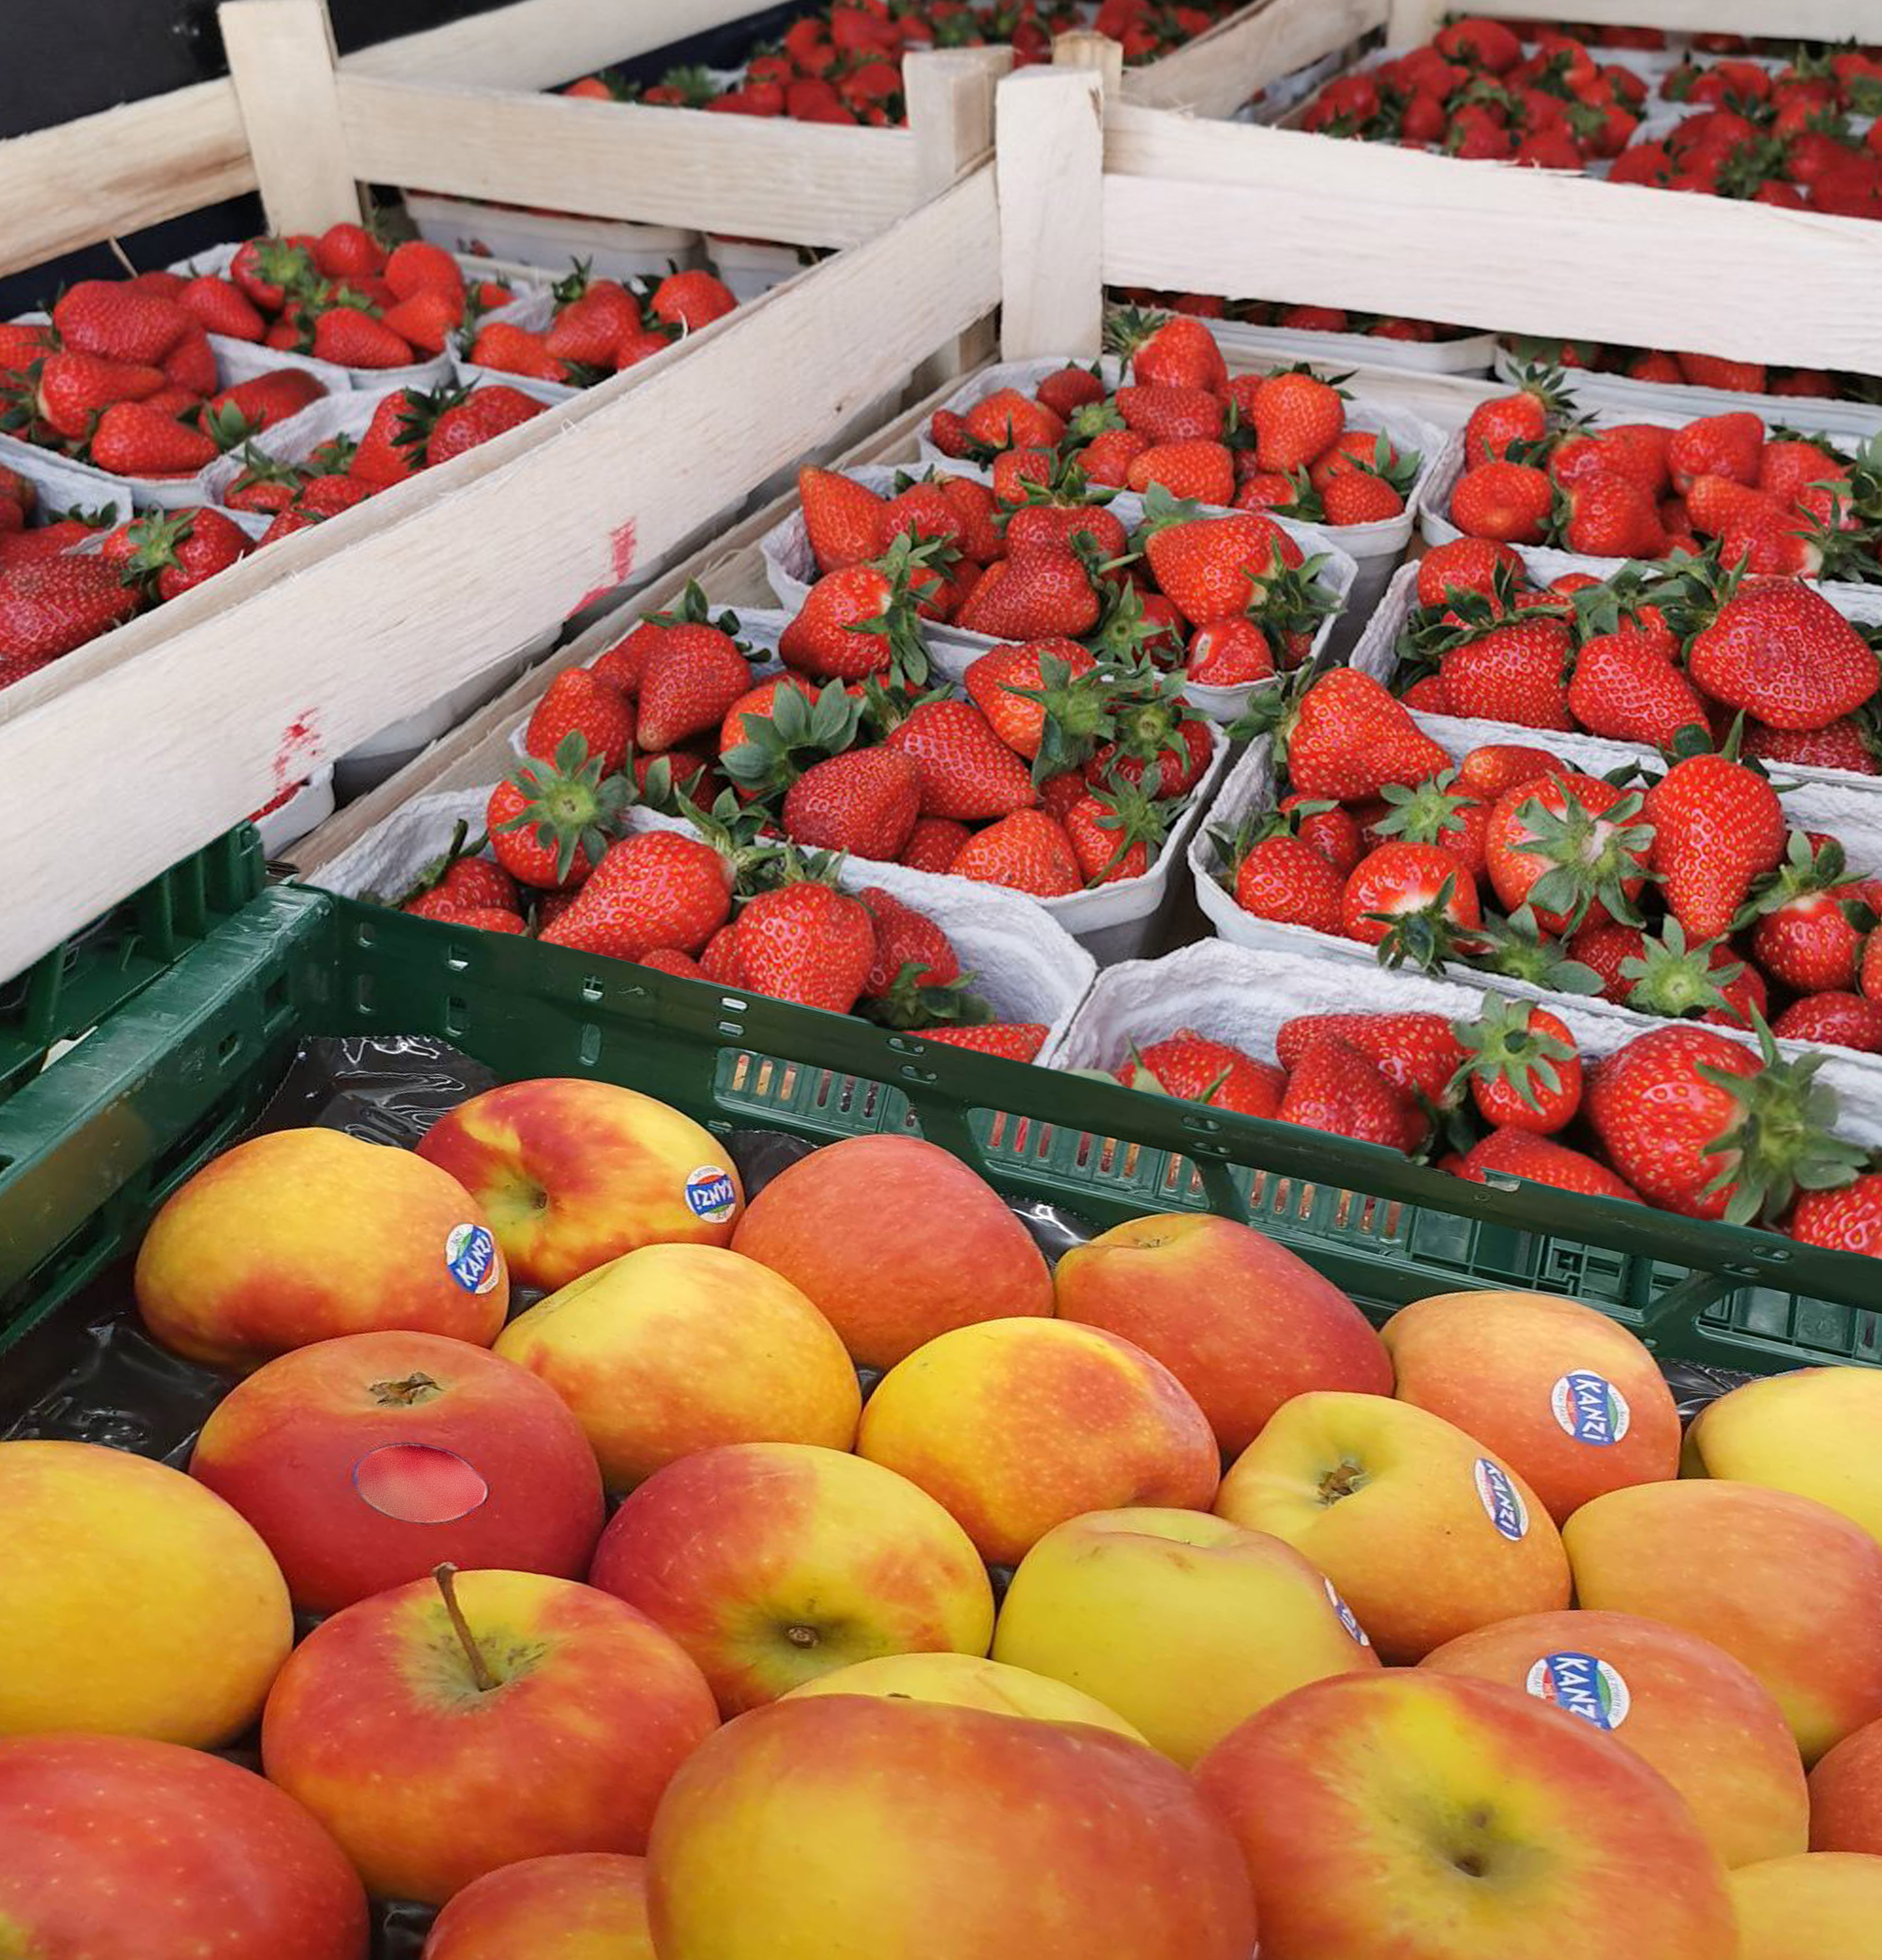 Wstępne wyniki kontroli jakości handlowej świeżych owoców i warzyw w sieciach handlowych